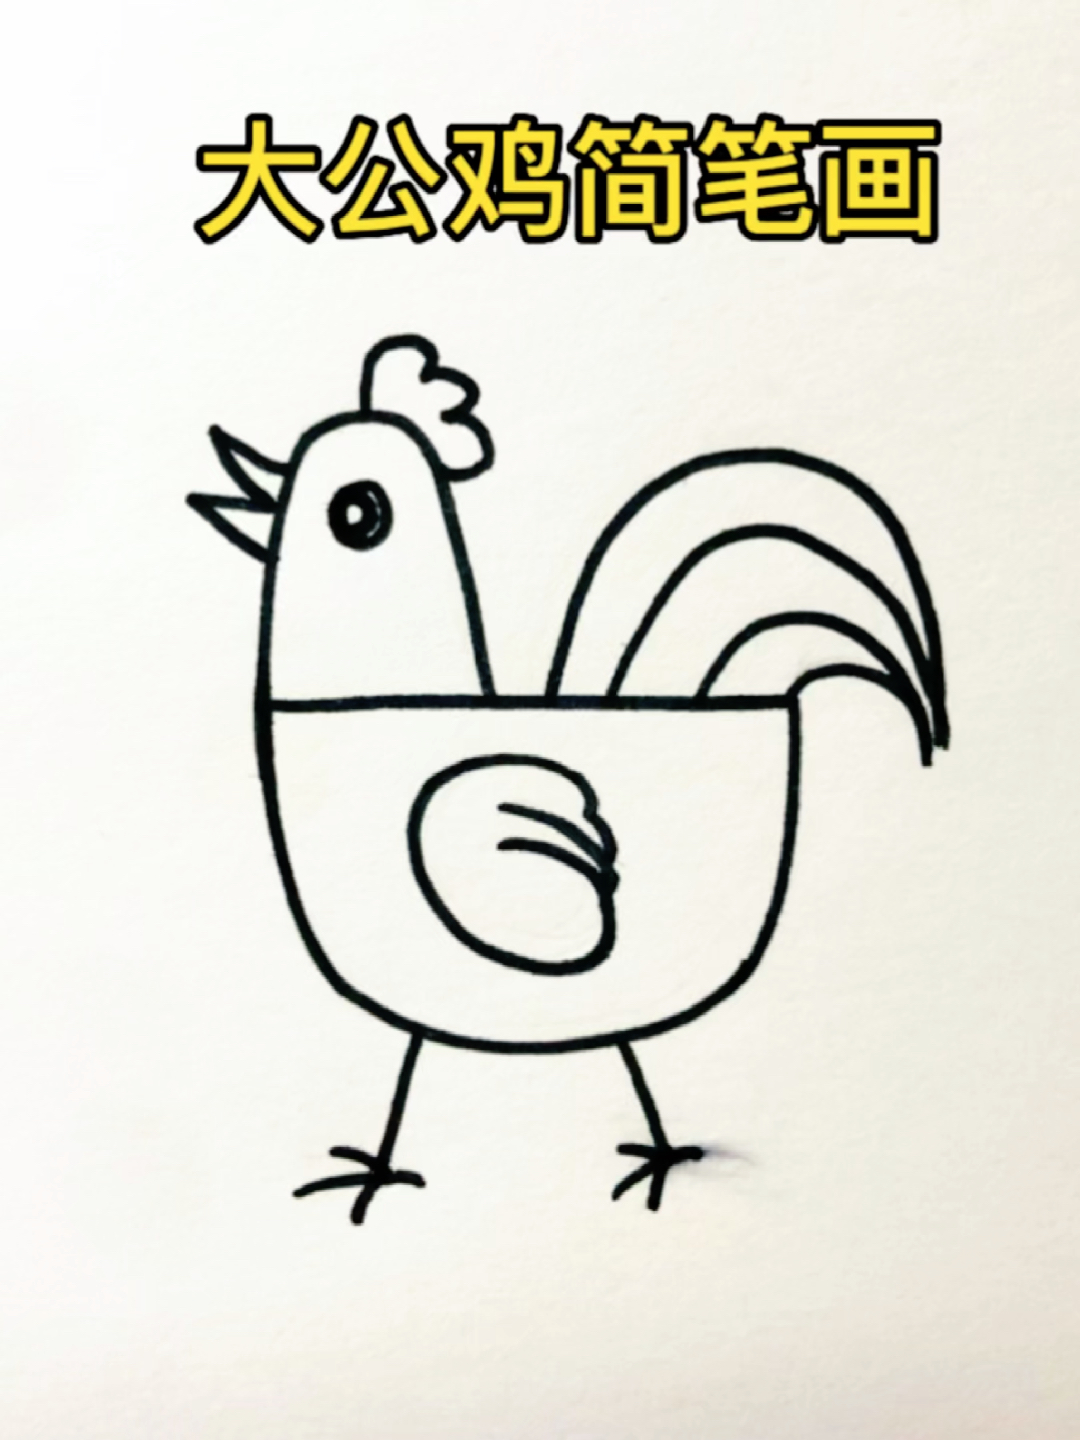 画大公鸡的简笔画图片